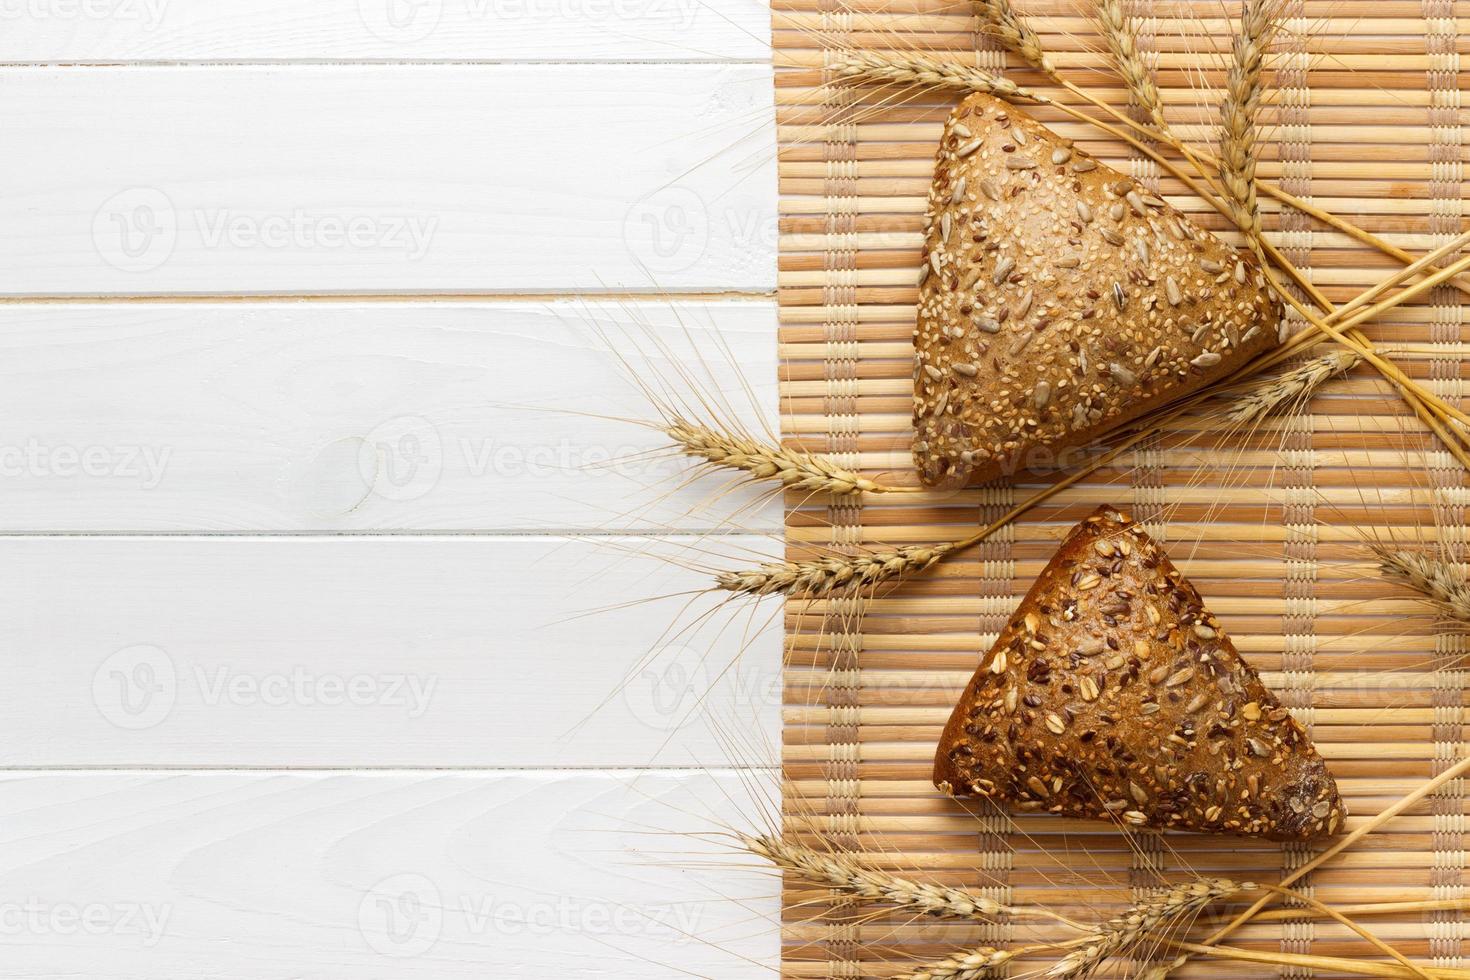 varios pequeños panes triangulares multigrano rociados con semillas enteras de girasol, semillas de lino y sésamo y espigas de trigo y cebada foto